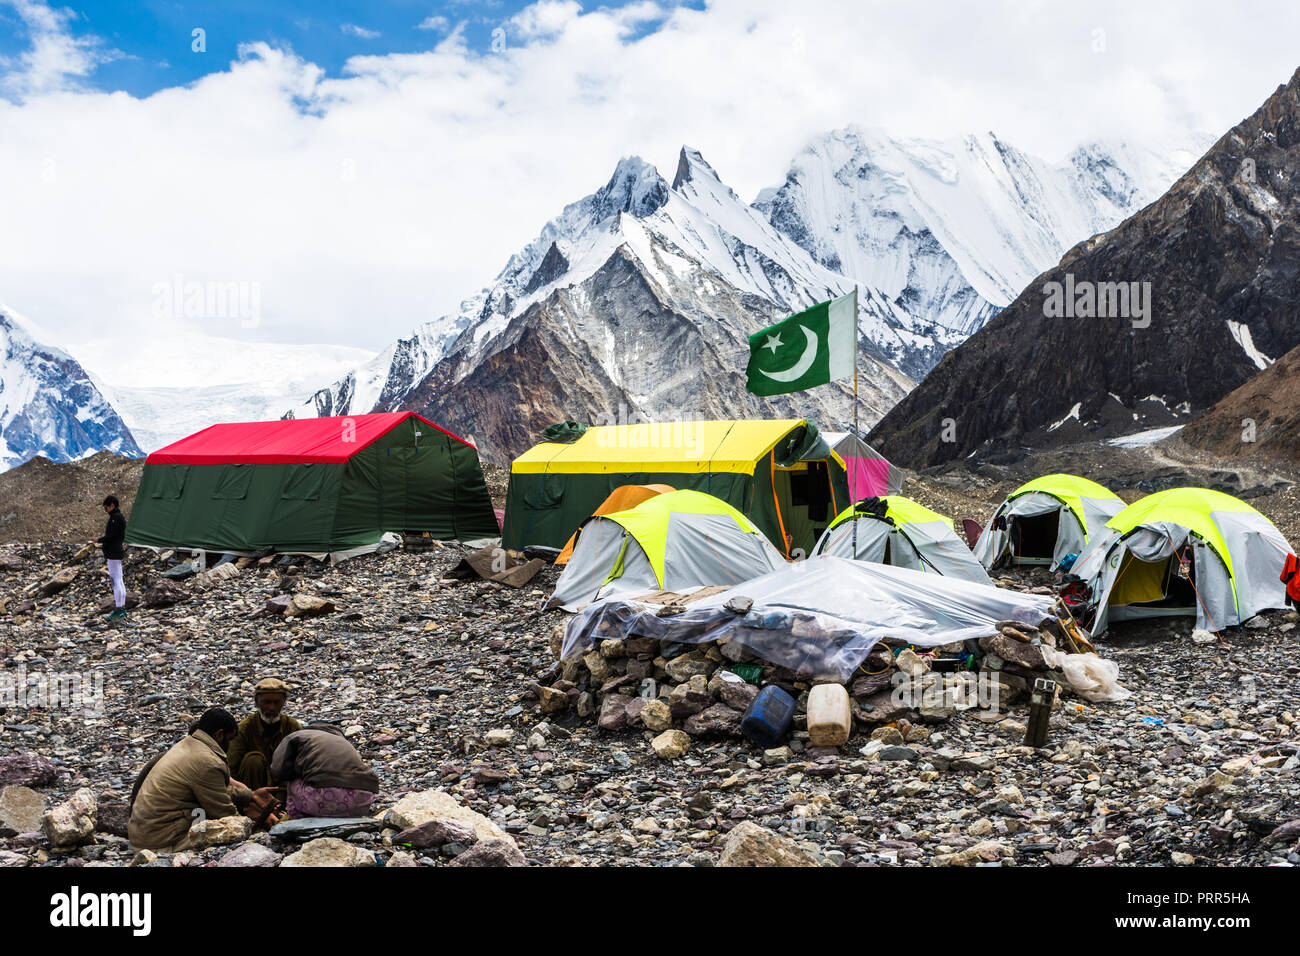 Pakistanische Fahne in Concordia Campingplatz Kumul Gri (Vigne peaks) und Kondus Peak im Hintergrund, Baltoro Gletscher, Pakistan Stockfoto